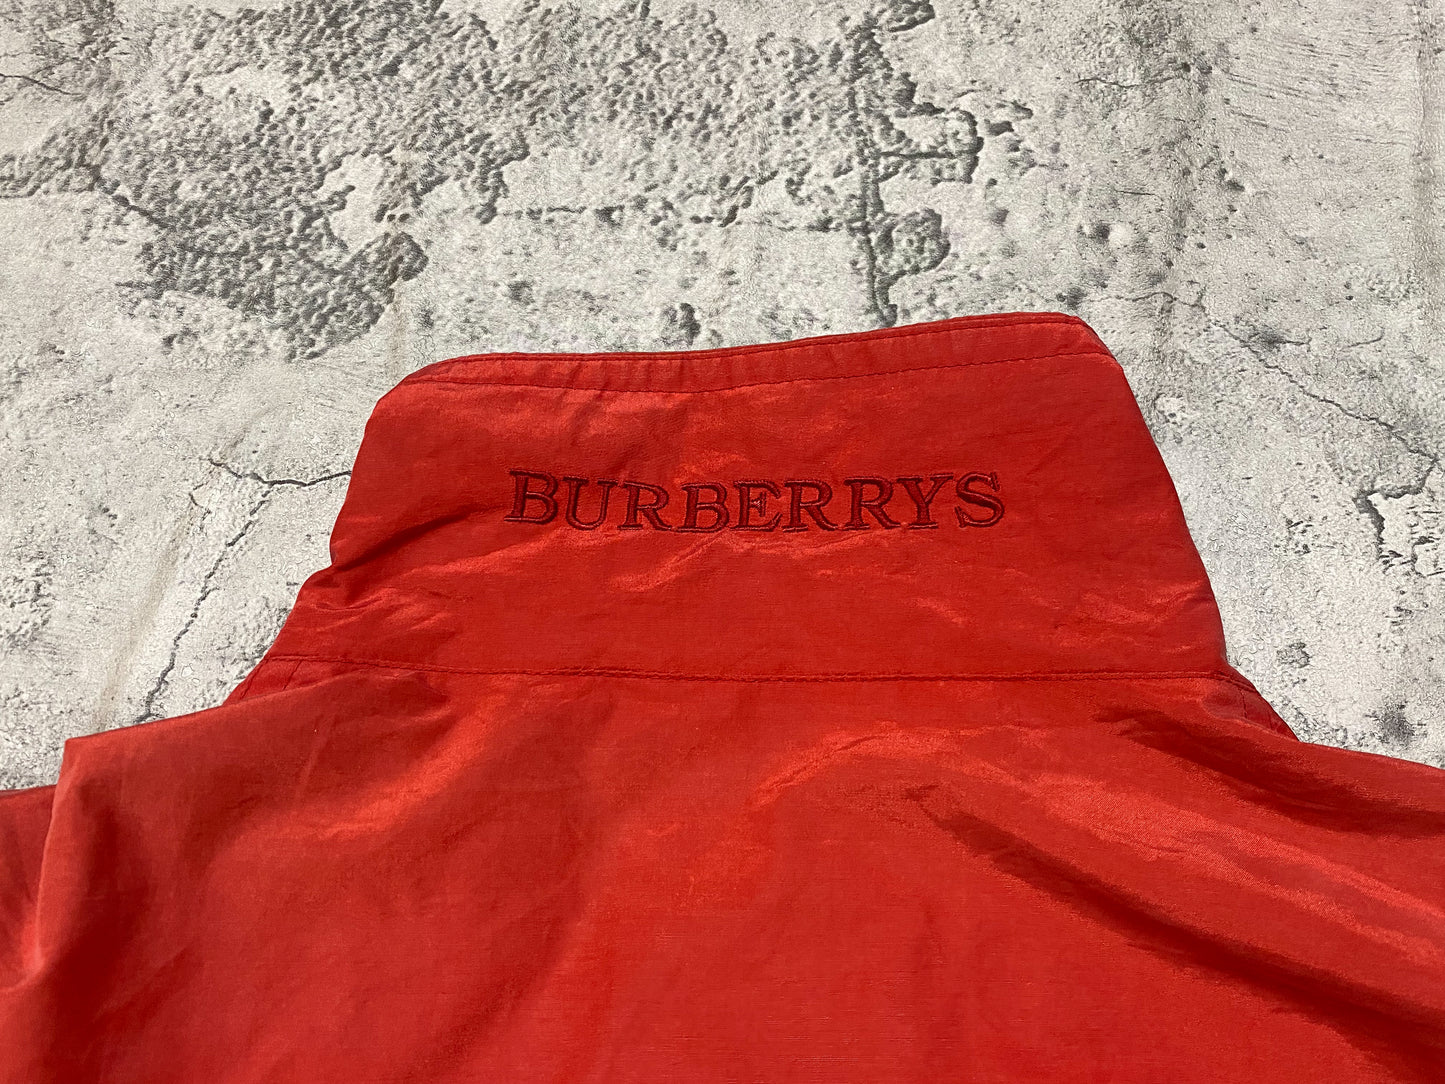 Burberrys' Red Coat 90s